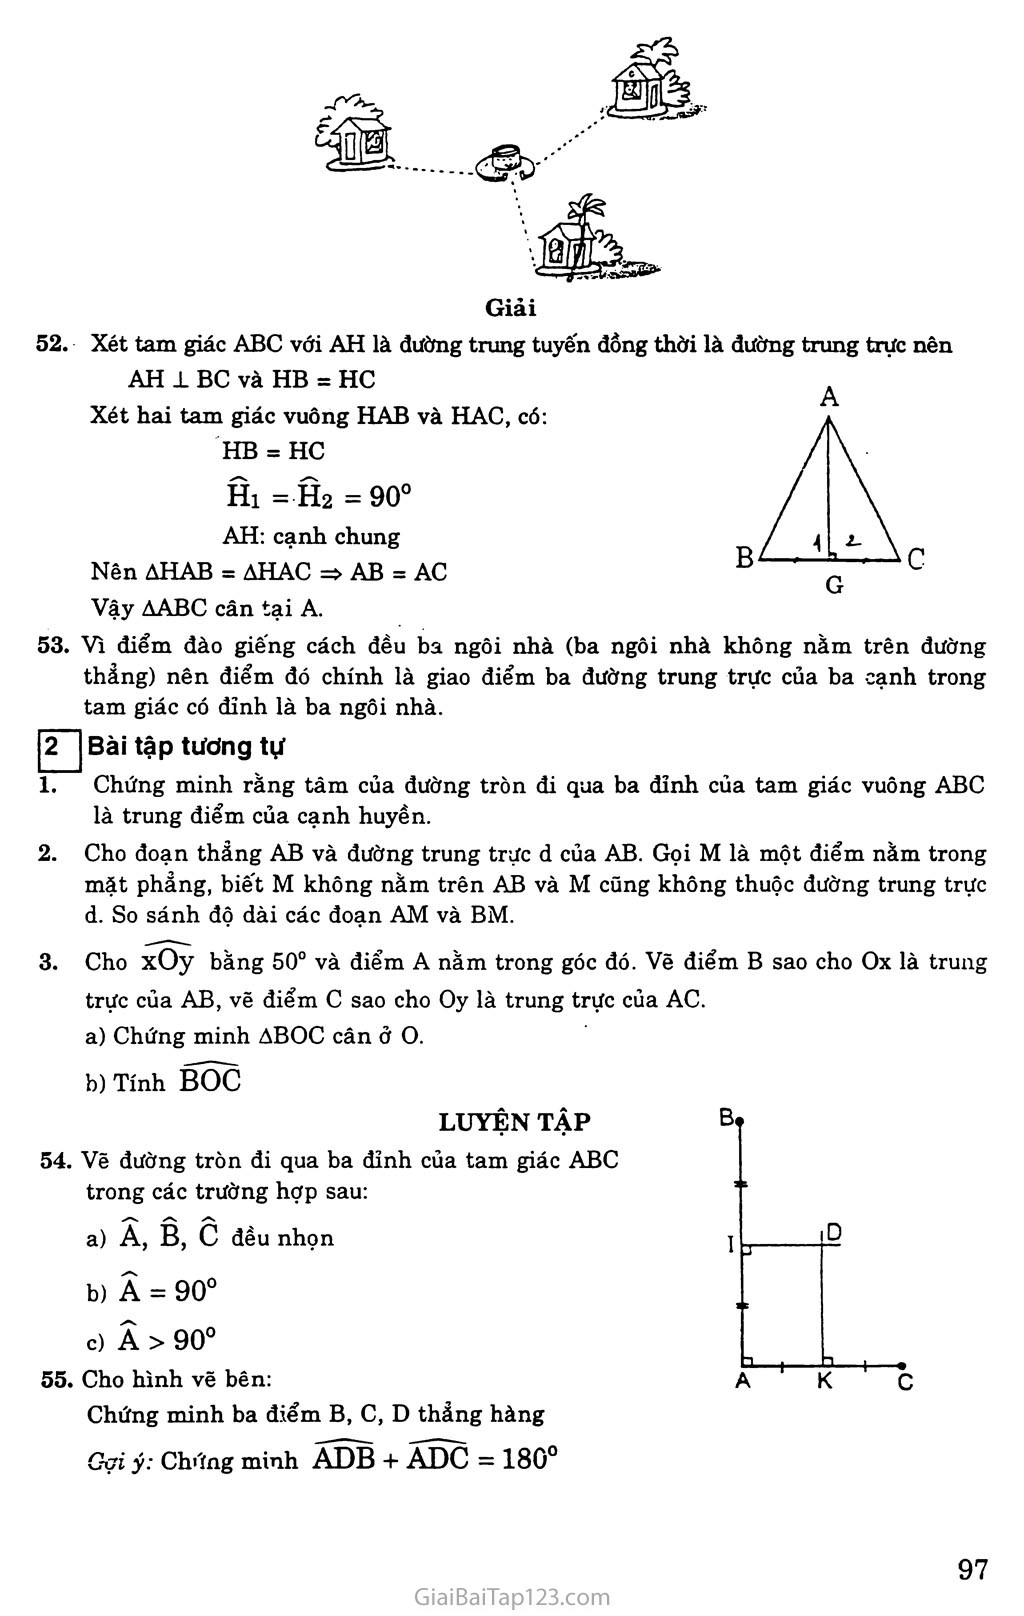 Bài 8. Tính chất ba đường trung trực của tam giác trang 3